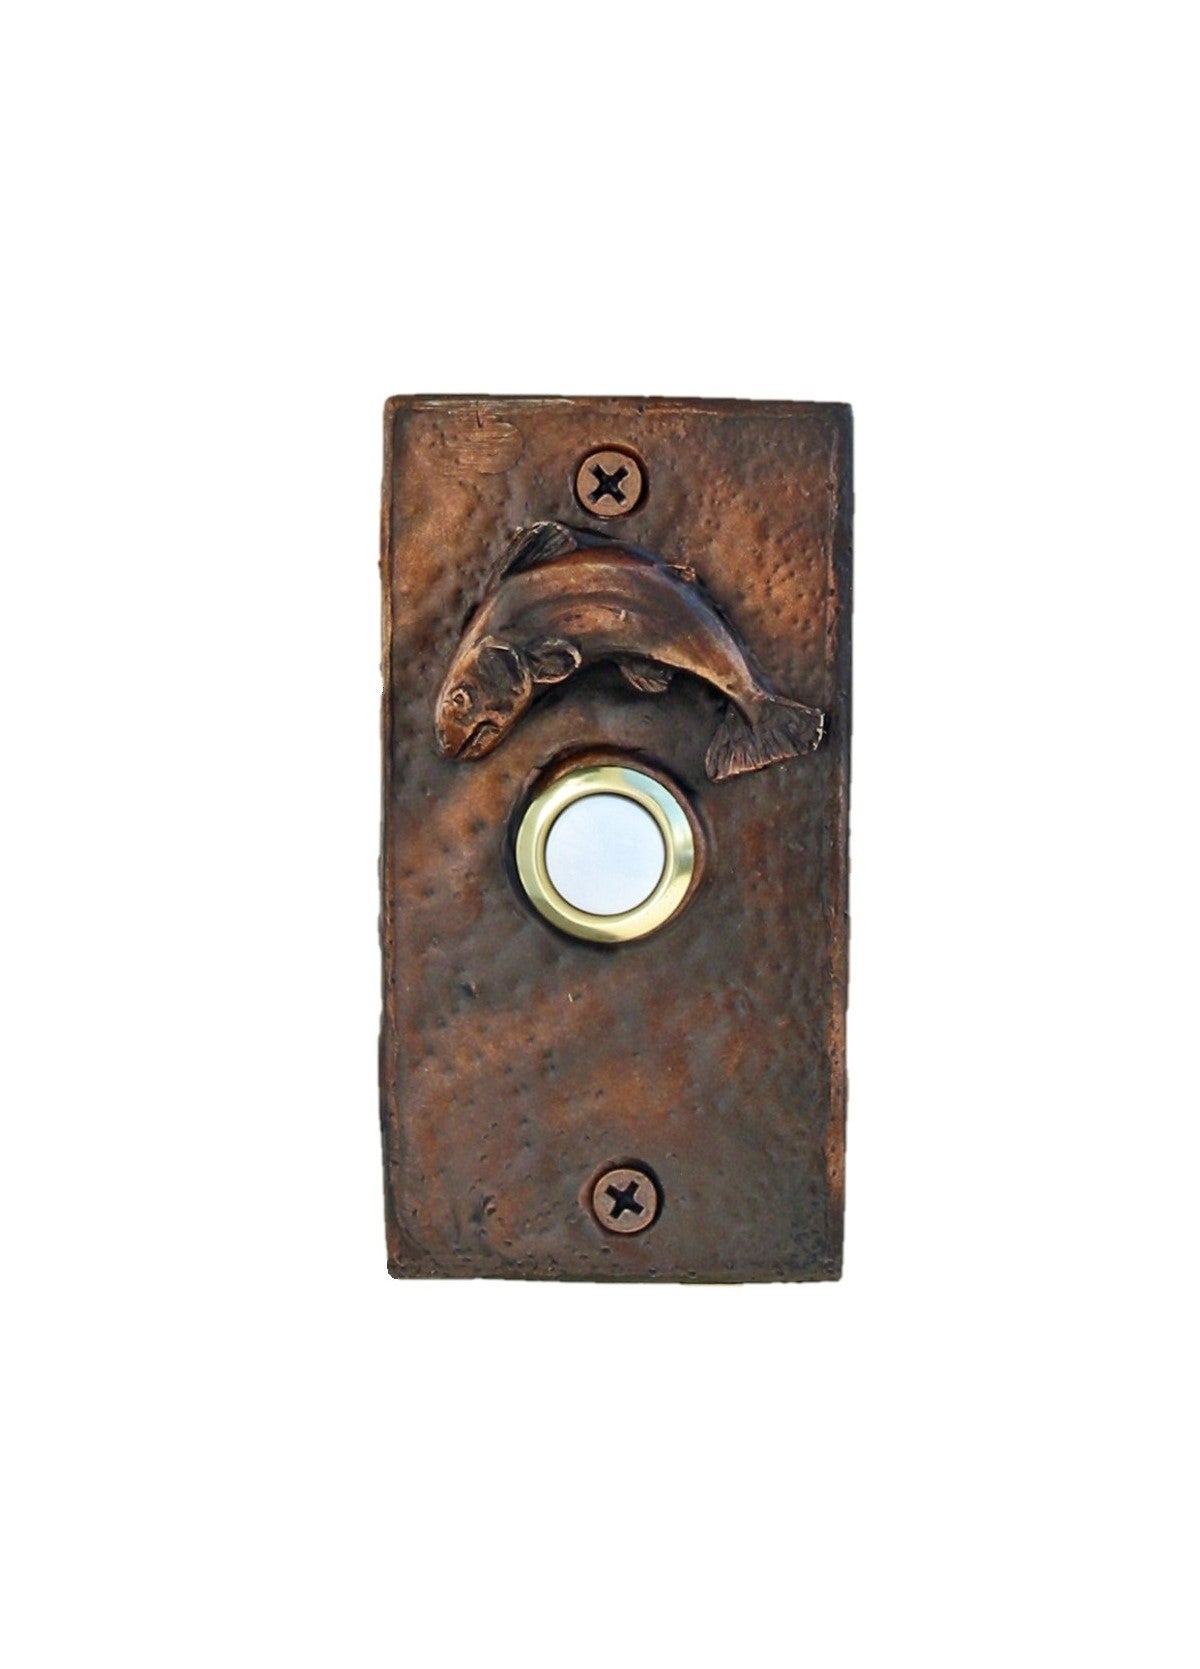 Rustic Bronze Trout Doorbell - Rectangle shape